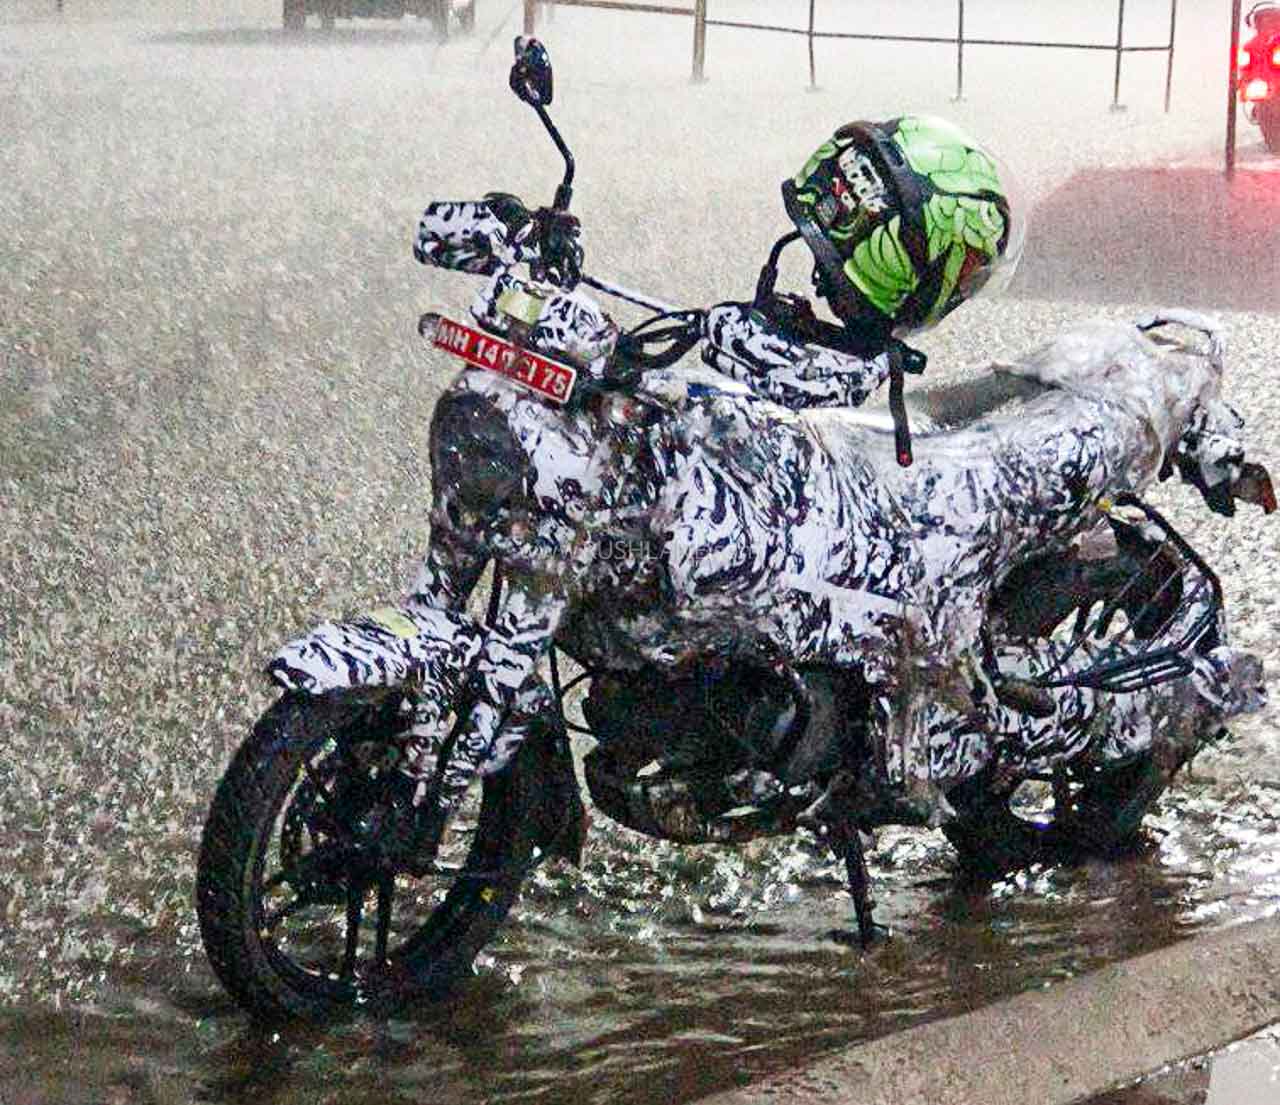 New Bajaj commuter motorcycle spied